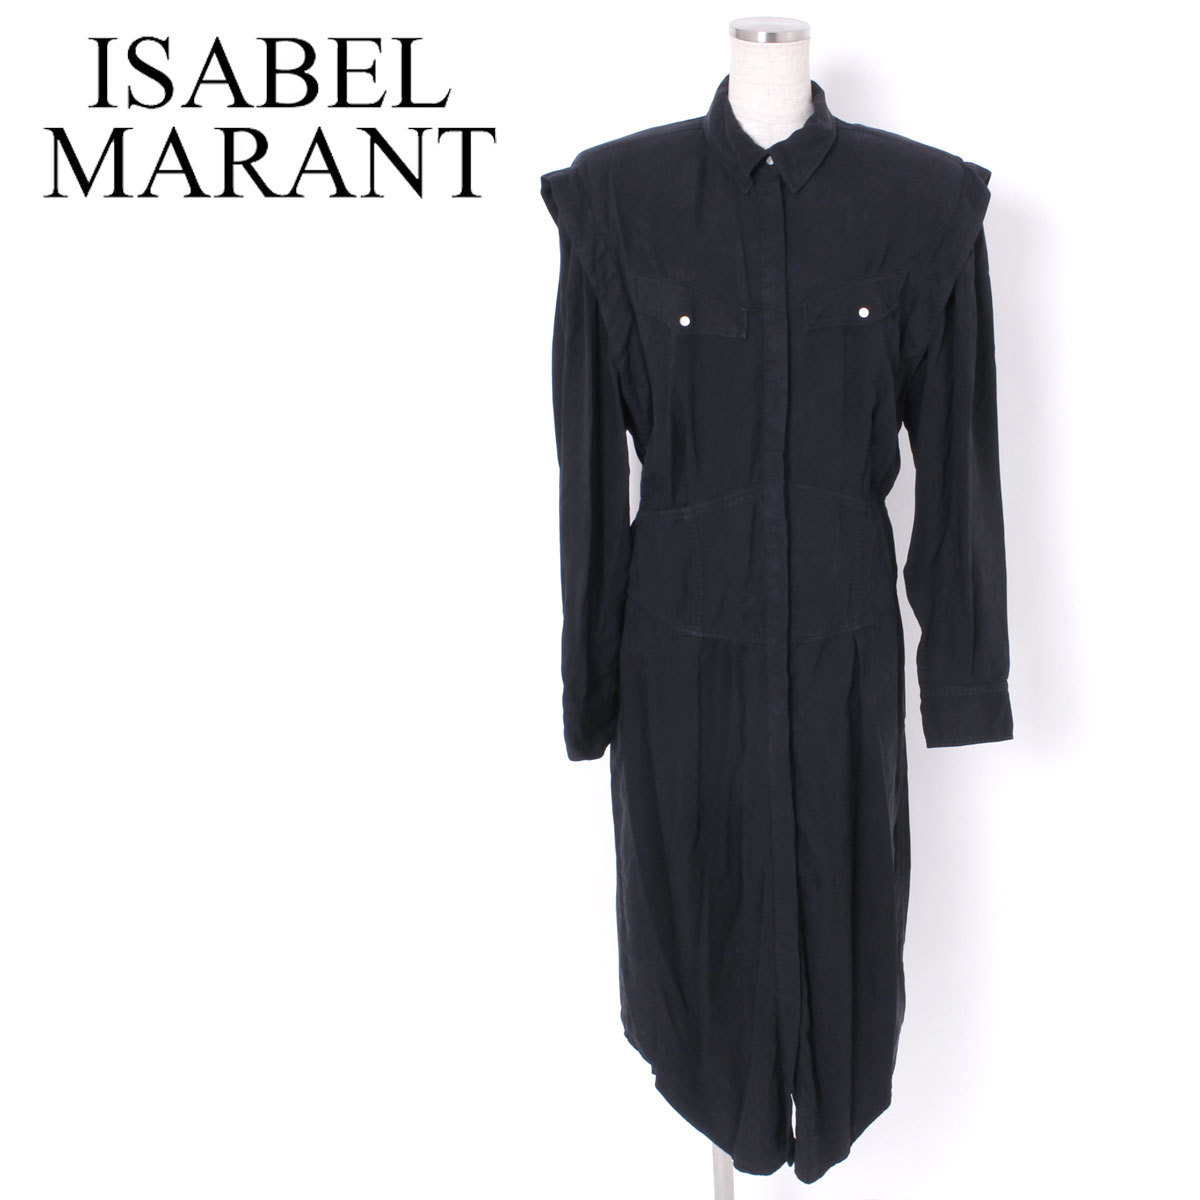 【タグ付き・新品・定価119,000円】ISABEL MARANT NAVEEN DRESS size38 FADED BLACK イザベルマラン シャツワンピース